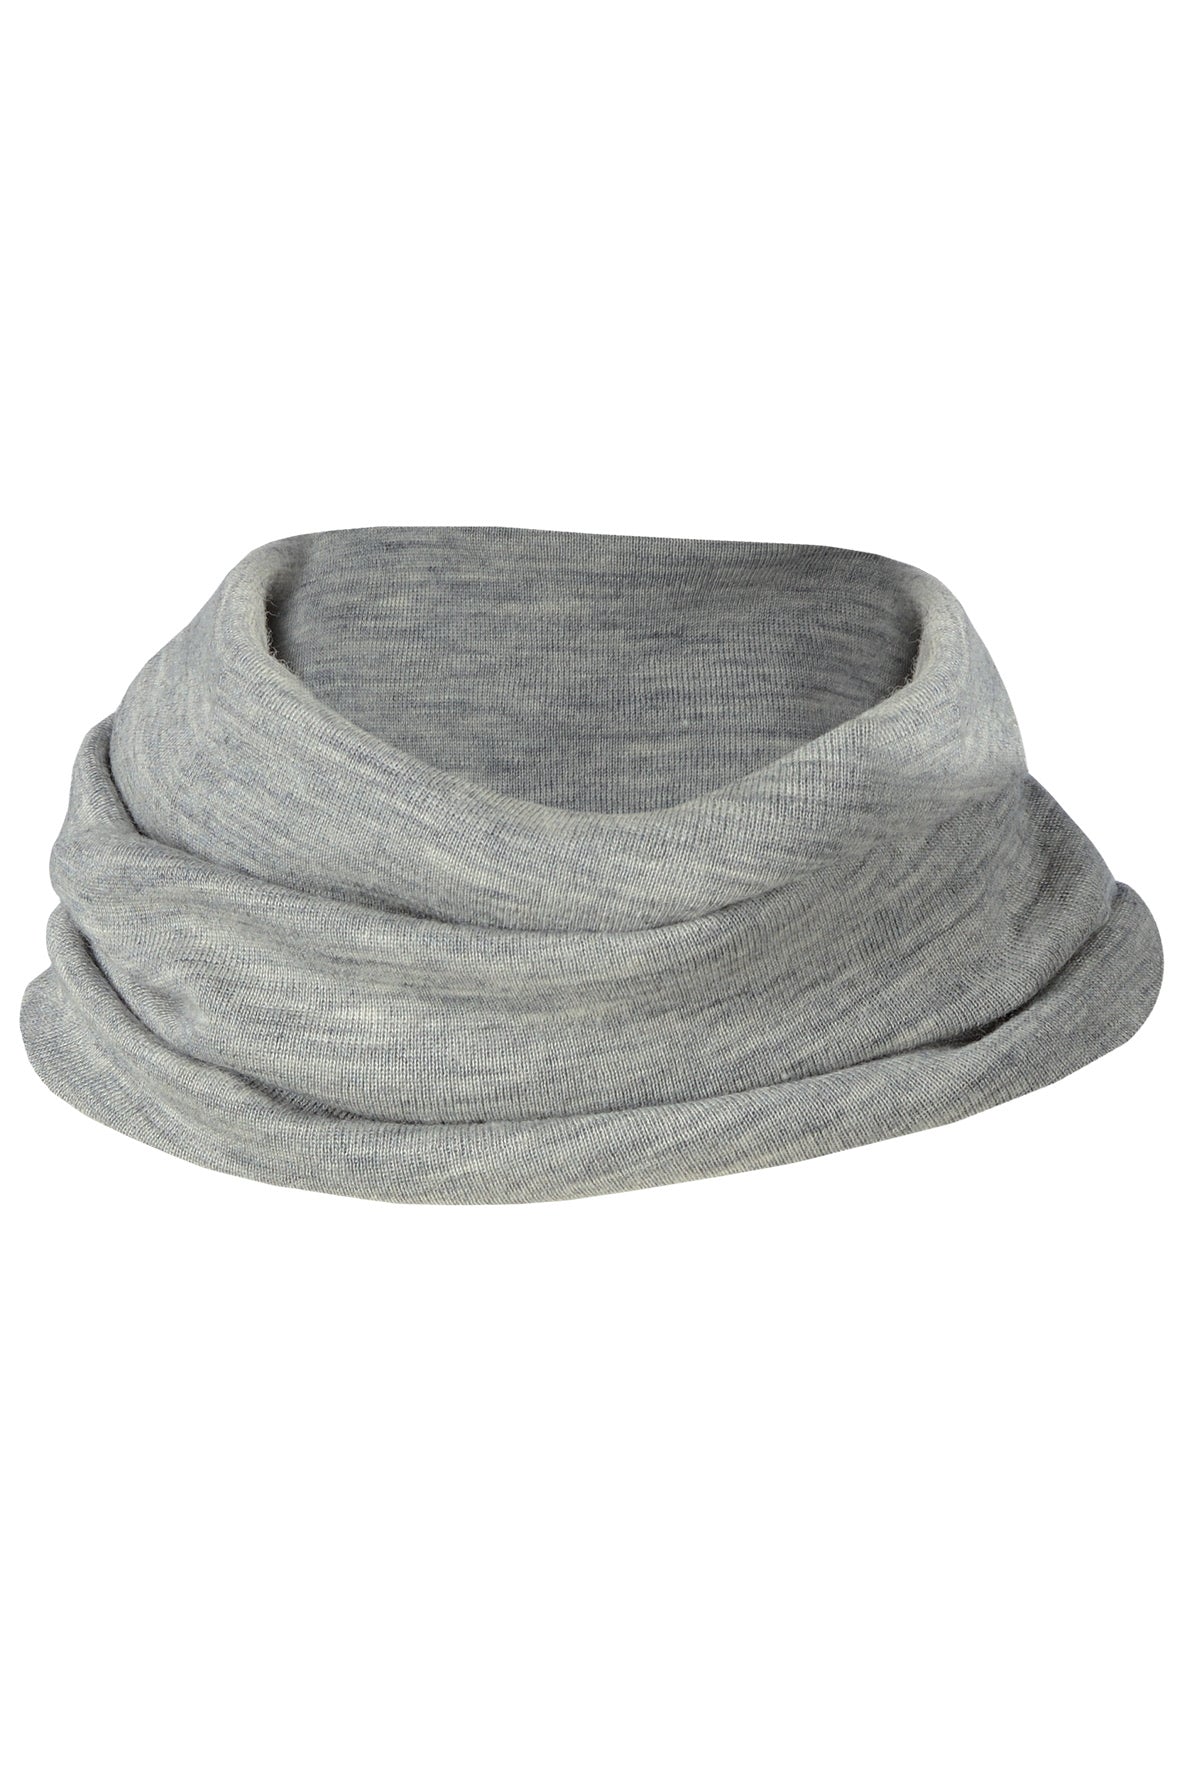 Engel silk wool loop scarf in gray